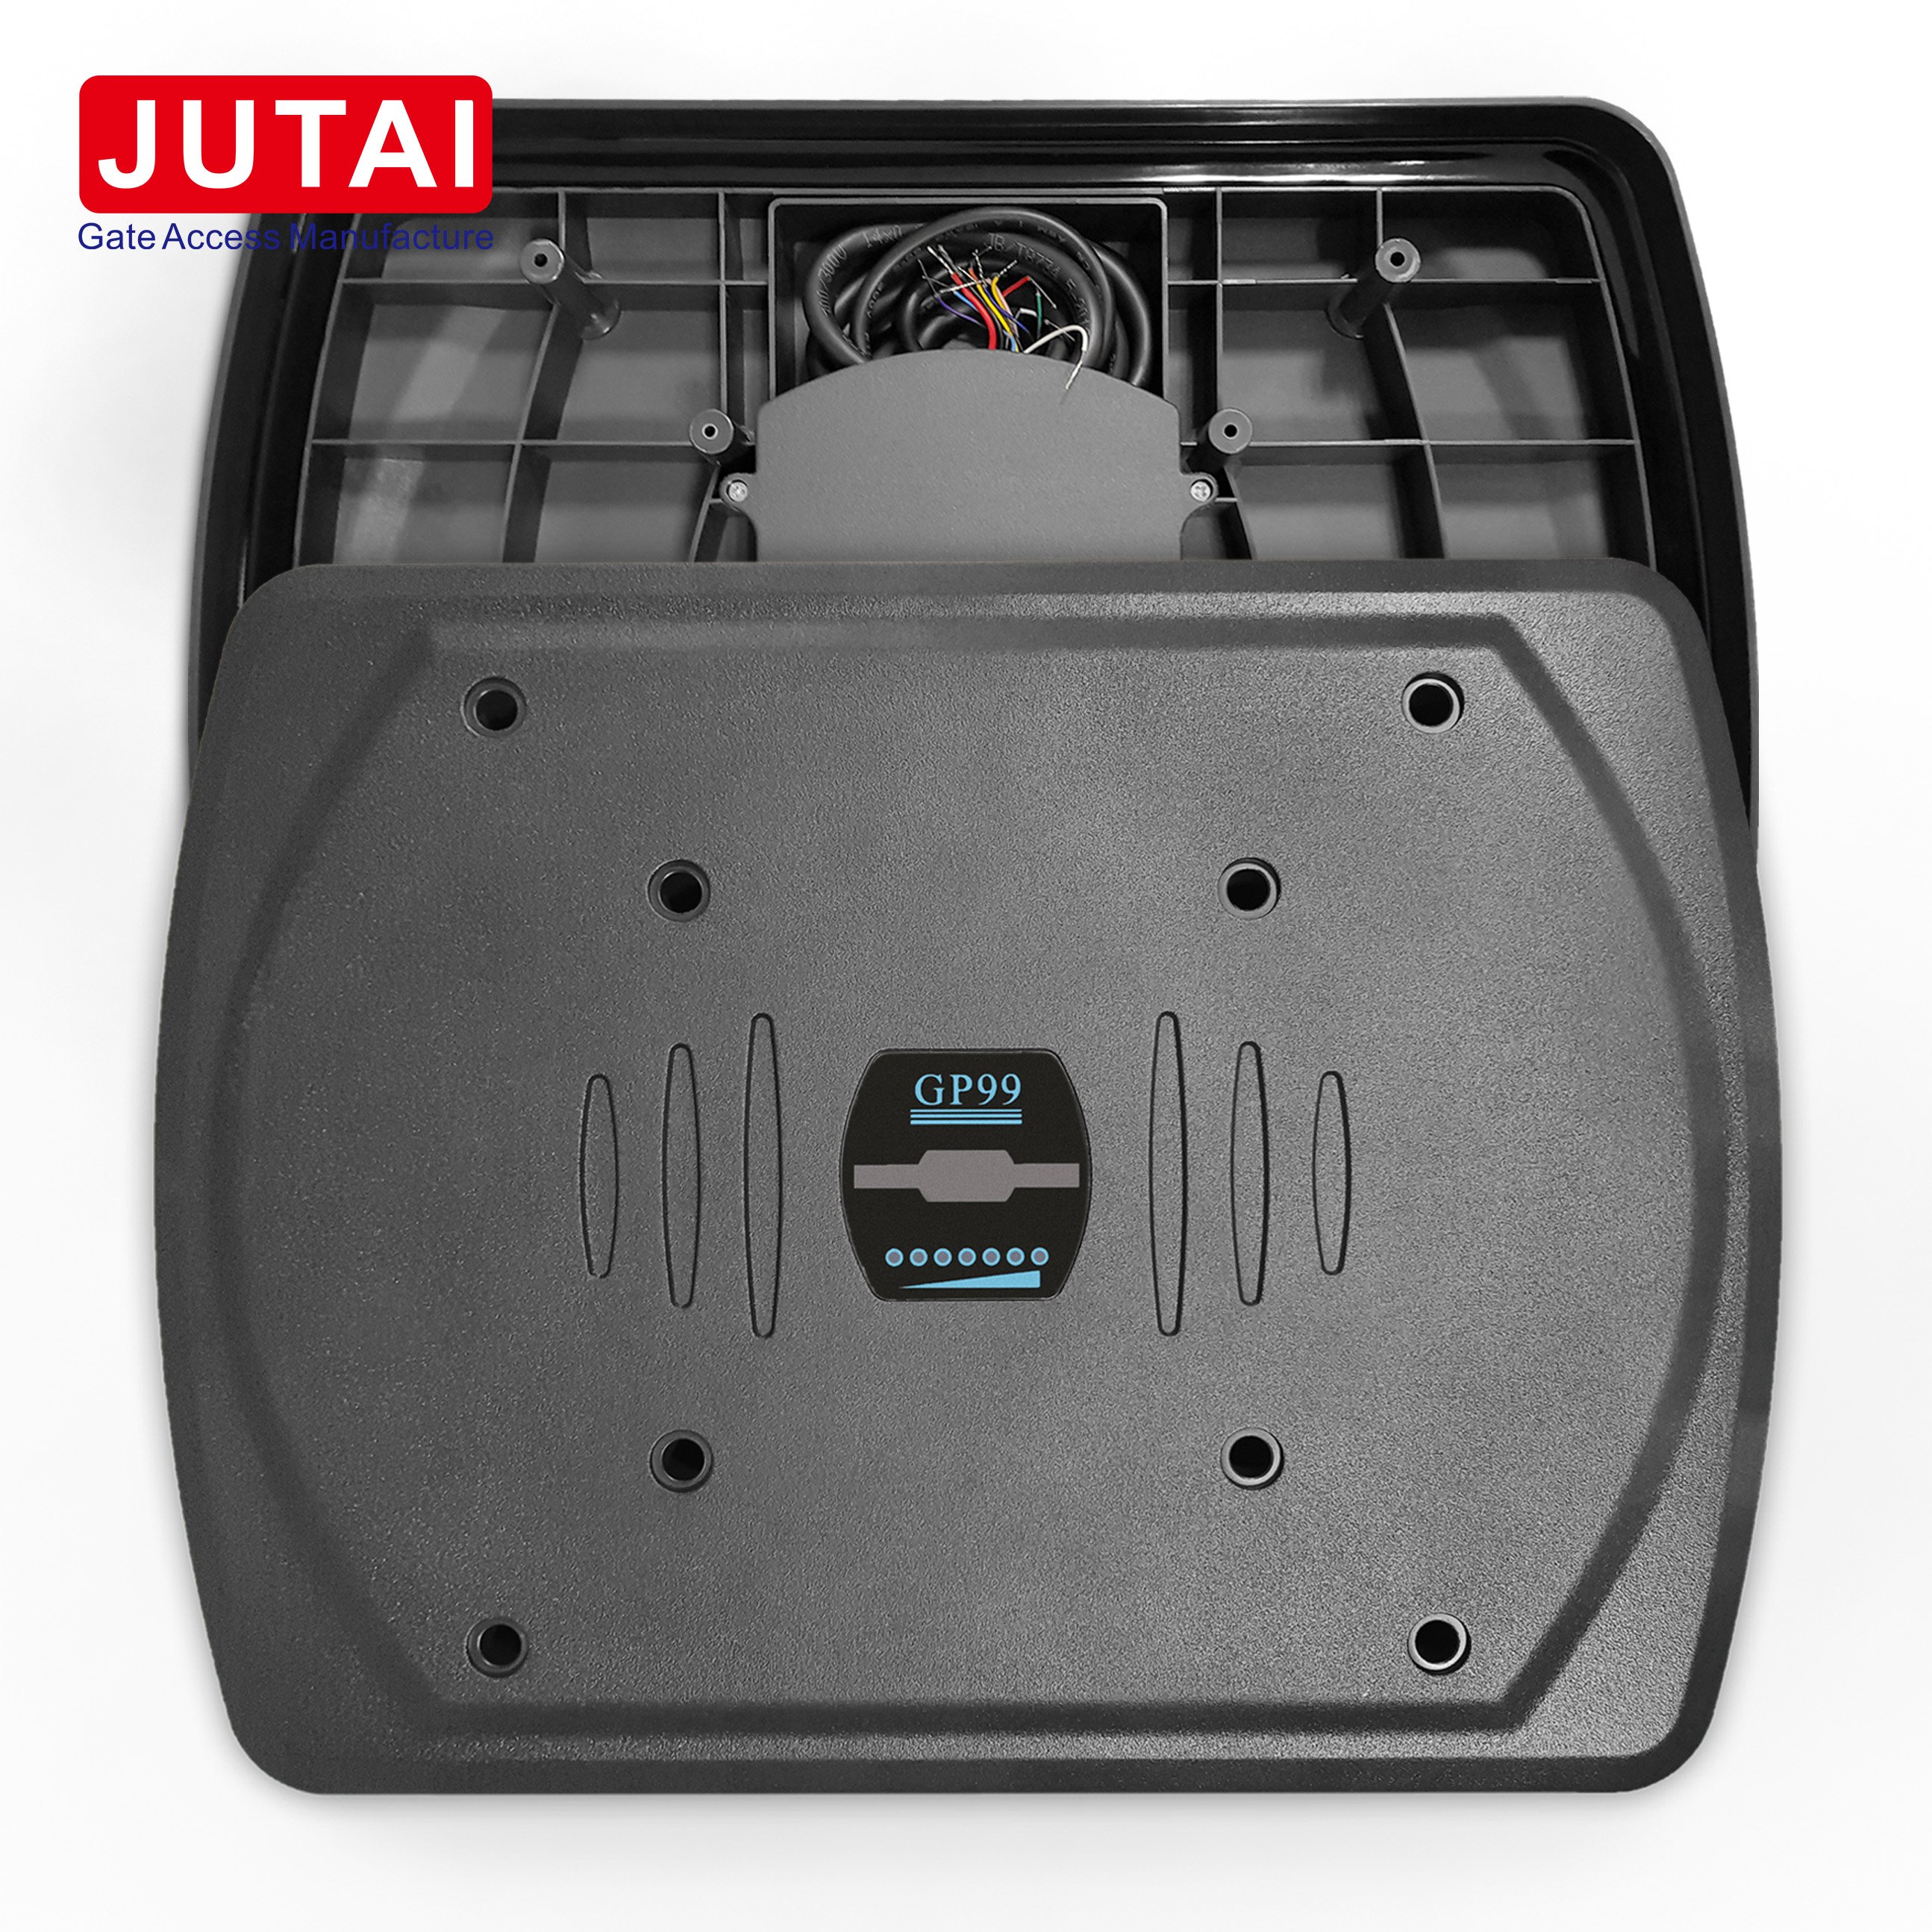 JUTAI GP99 Lector RFID de control de acceso de largo alcance